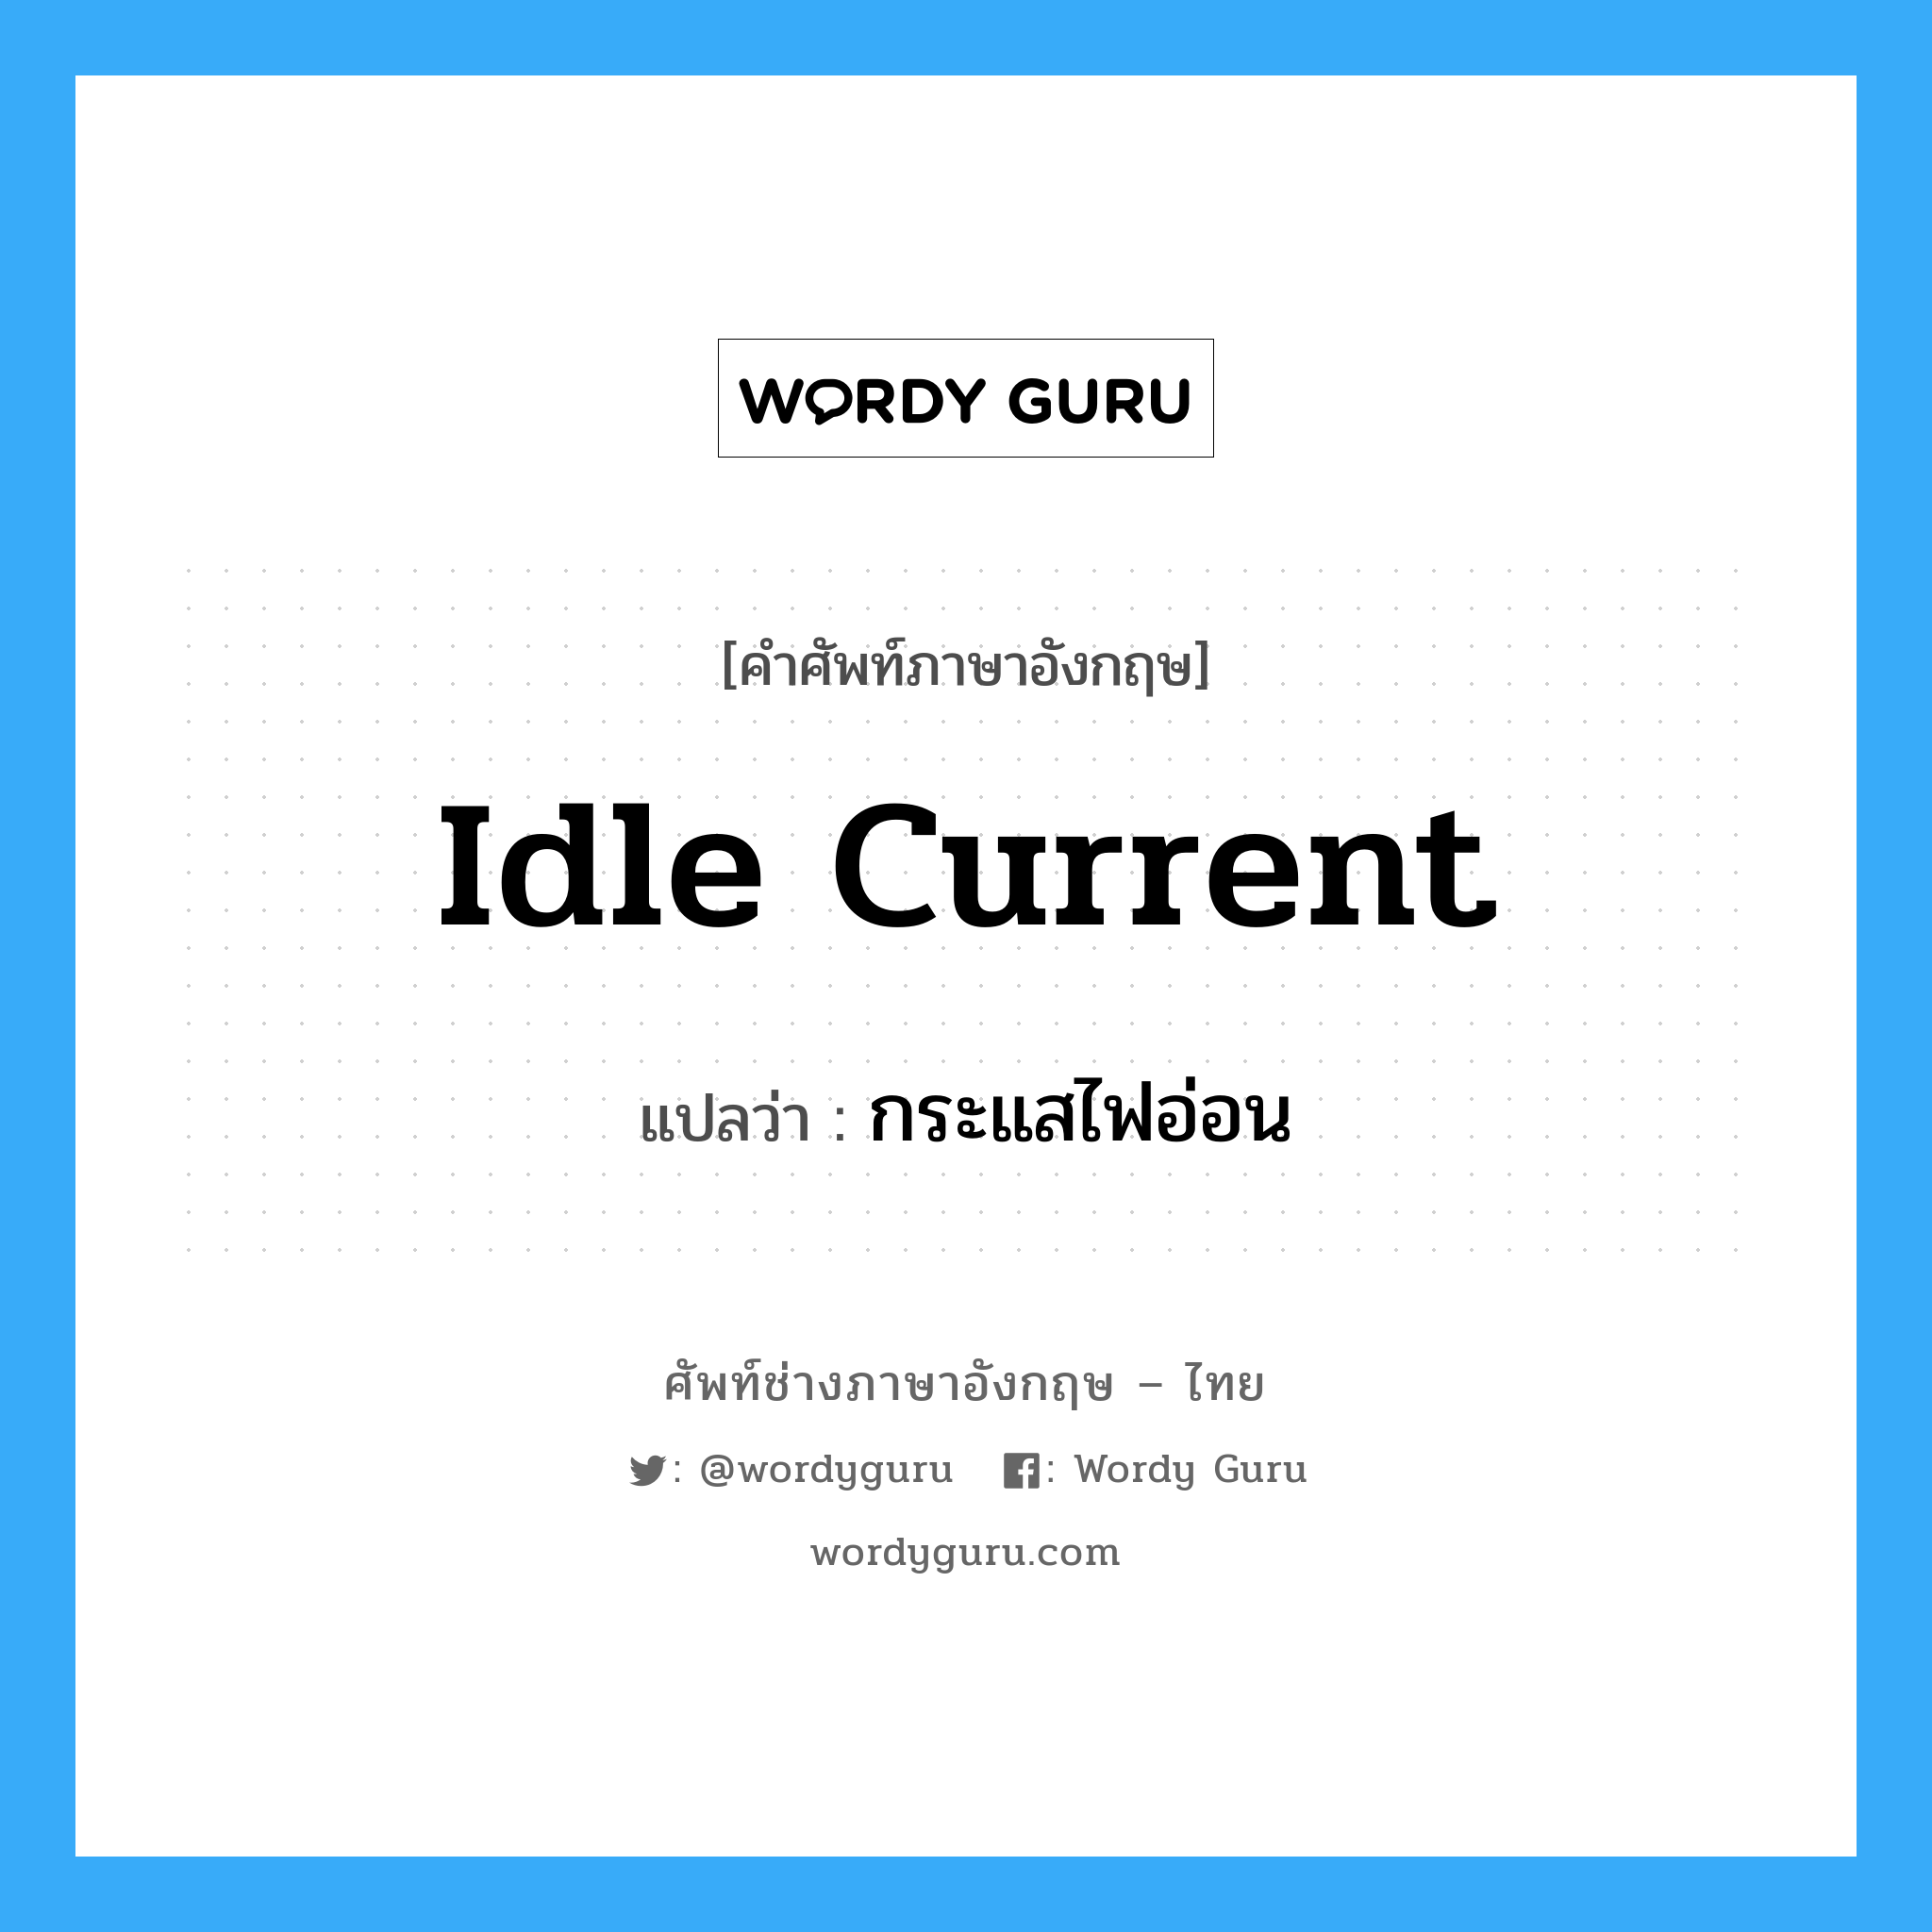 idle current แปลว่า?, คำศัพท์ช่างภาษาอังกฤษ - ไทย idle current คำศัพท์ภาษาอังกฤษ idle current แปลว่า กระแสไฟอ่อน